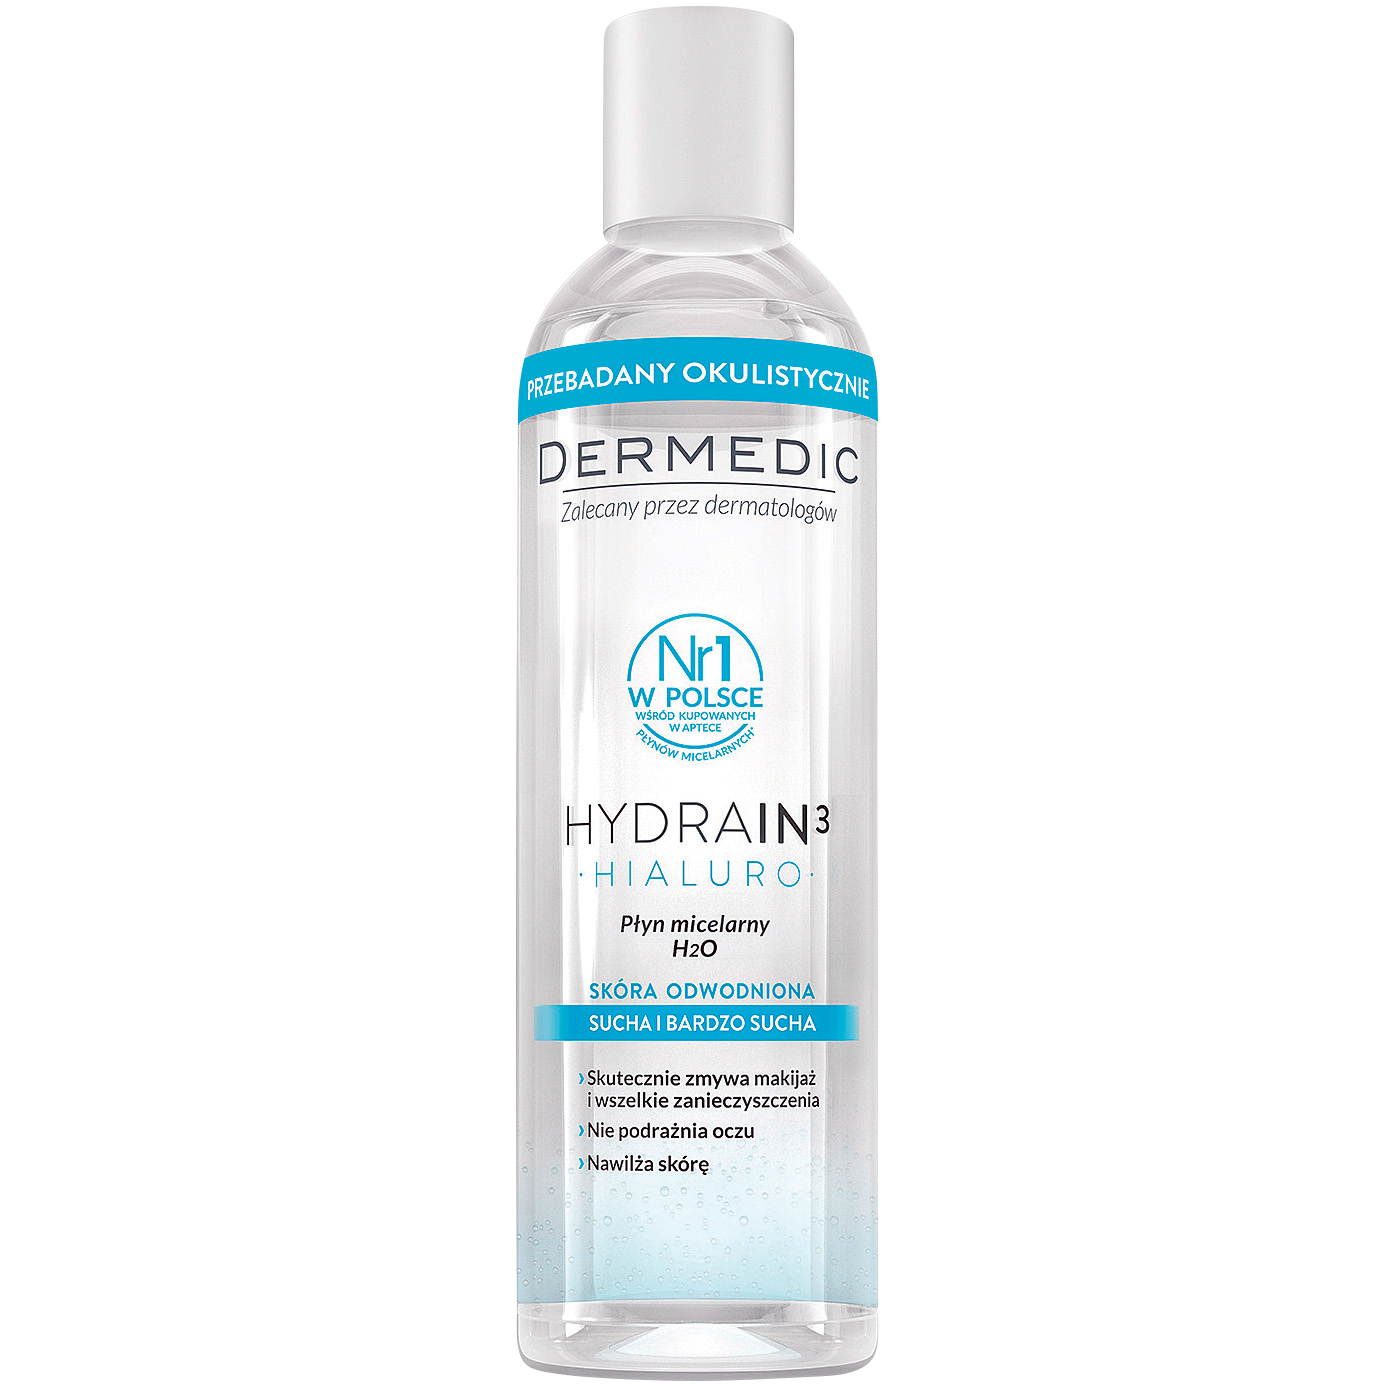 Dermedic Hydrain3 Hialuro мицеллярная вода H2O для лица, 200 мл косметика для мамы dermedic гидрейн 3 гиалуро мицеллярная вода h2o 500 мл